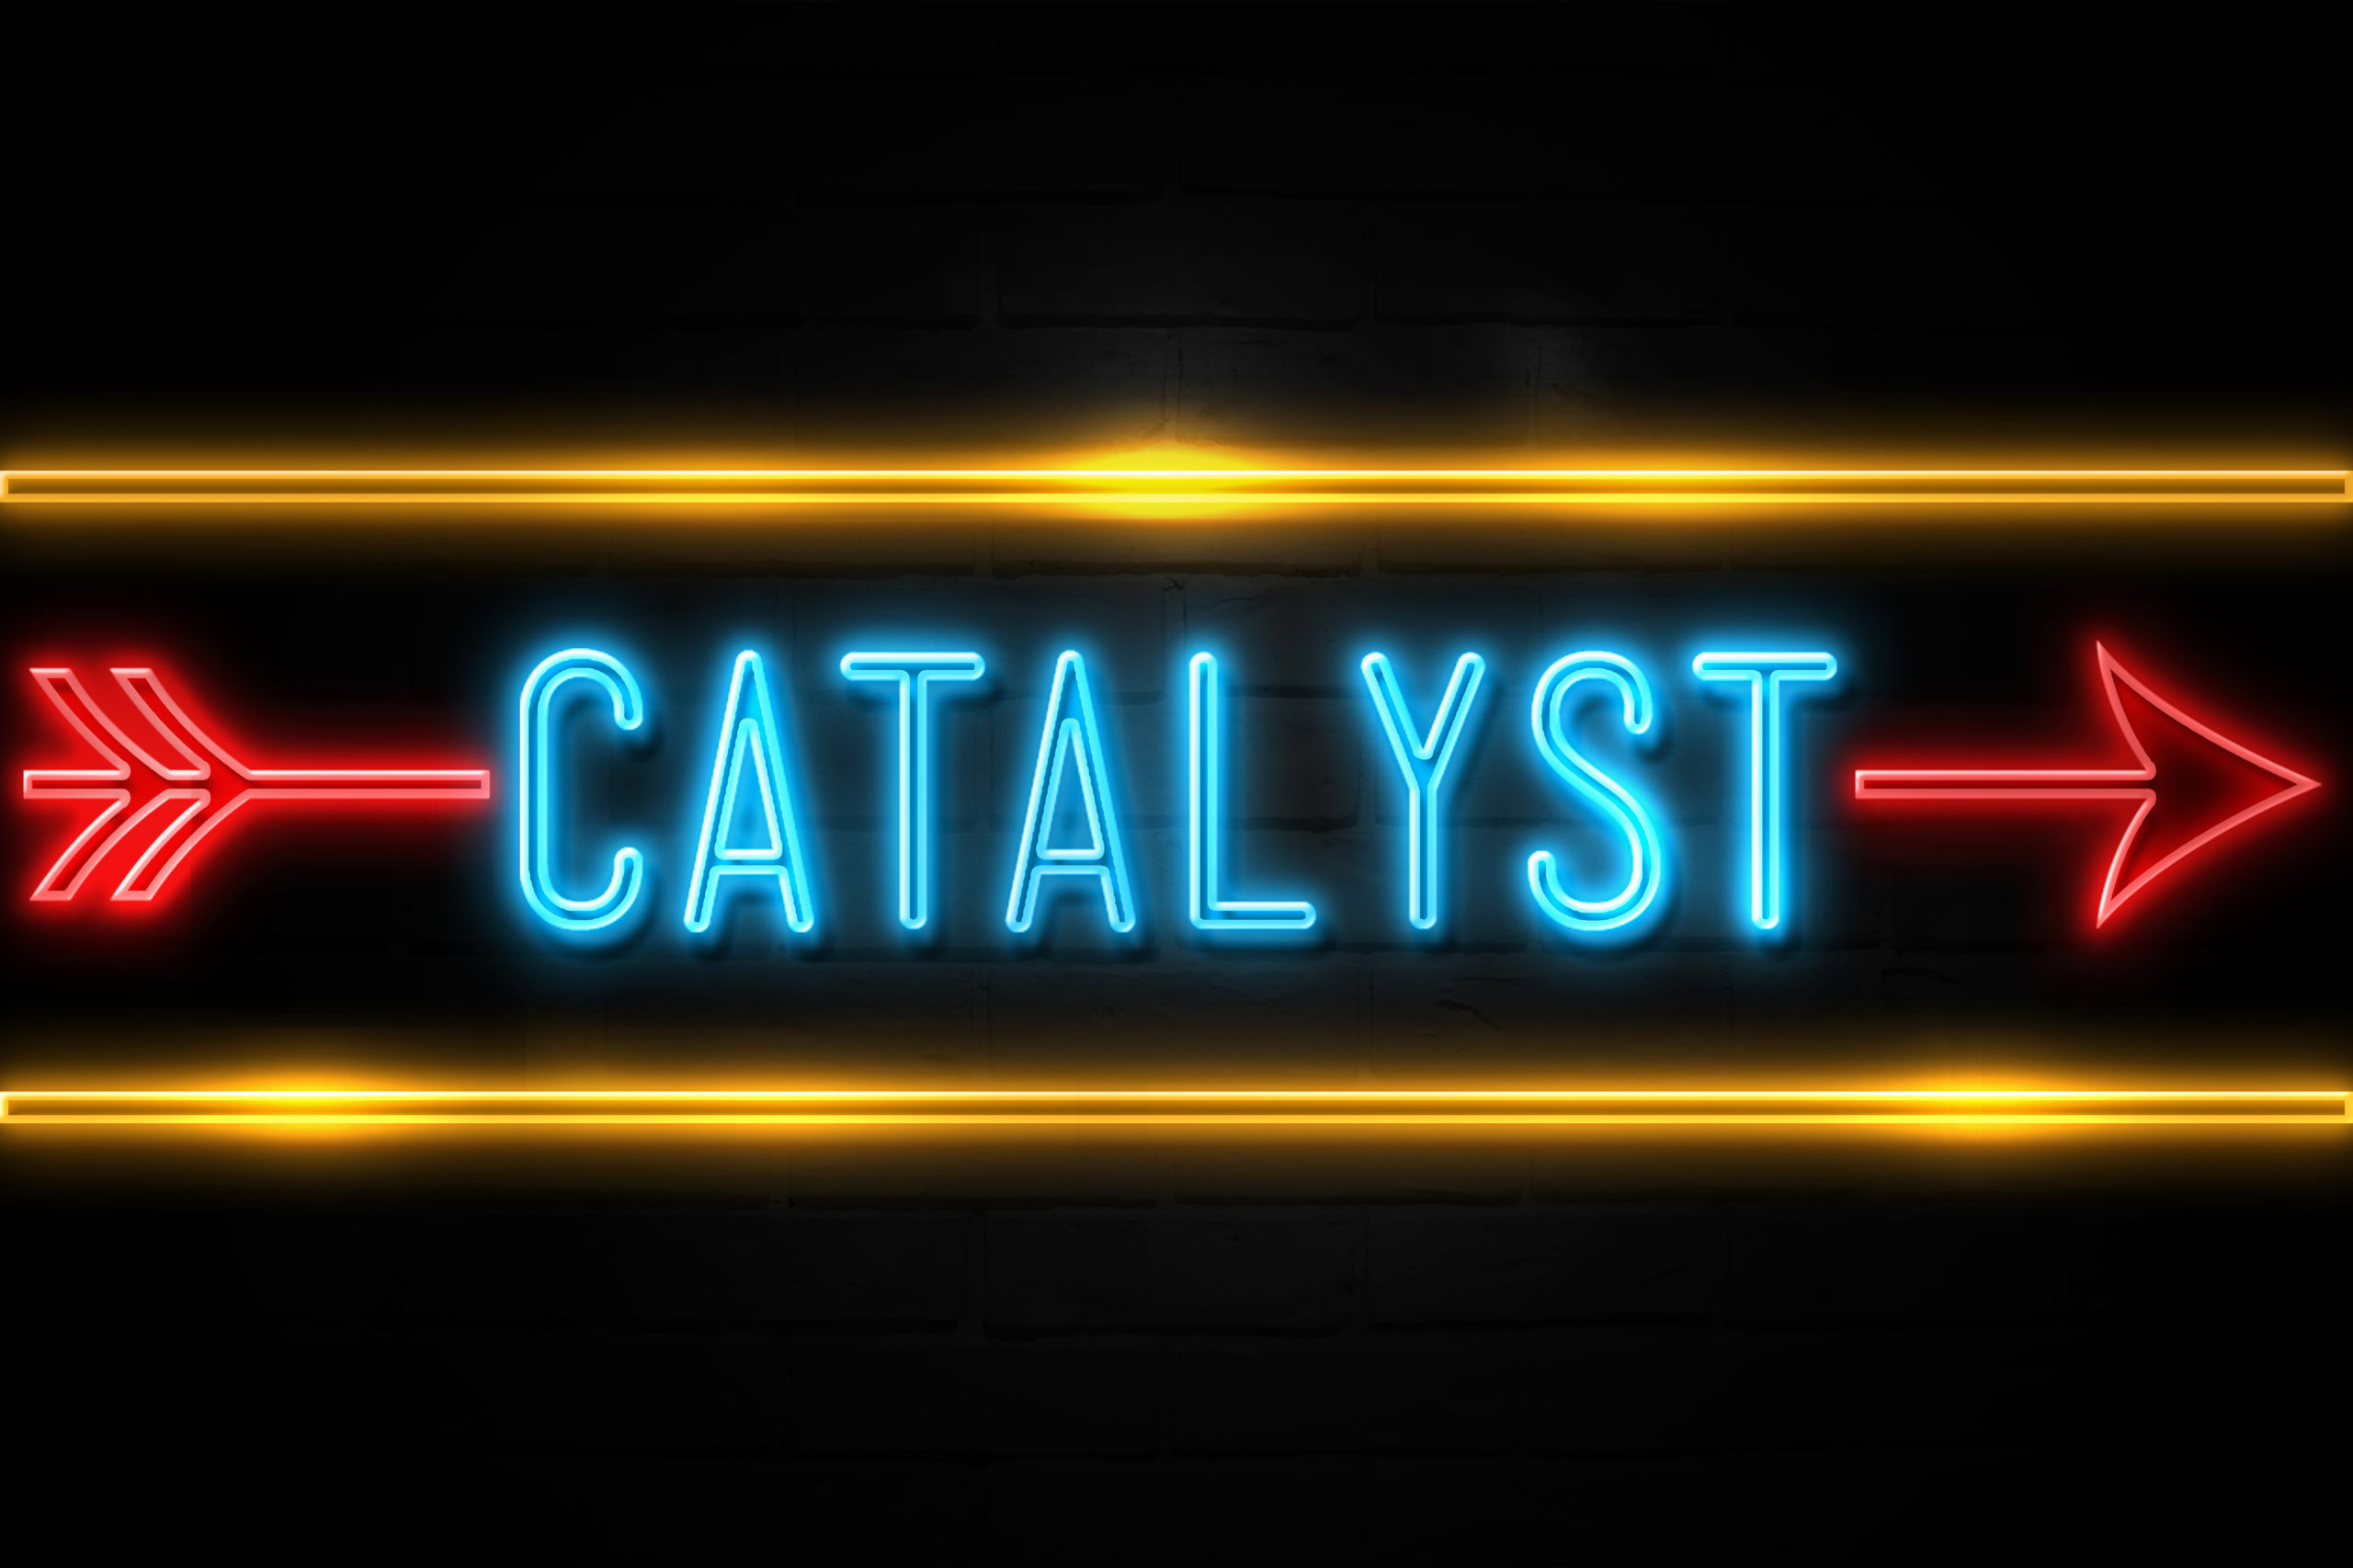 Catalyst - fluorescent Neon Sign on brickwall